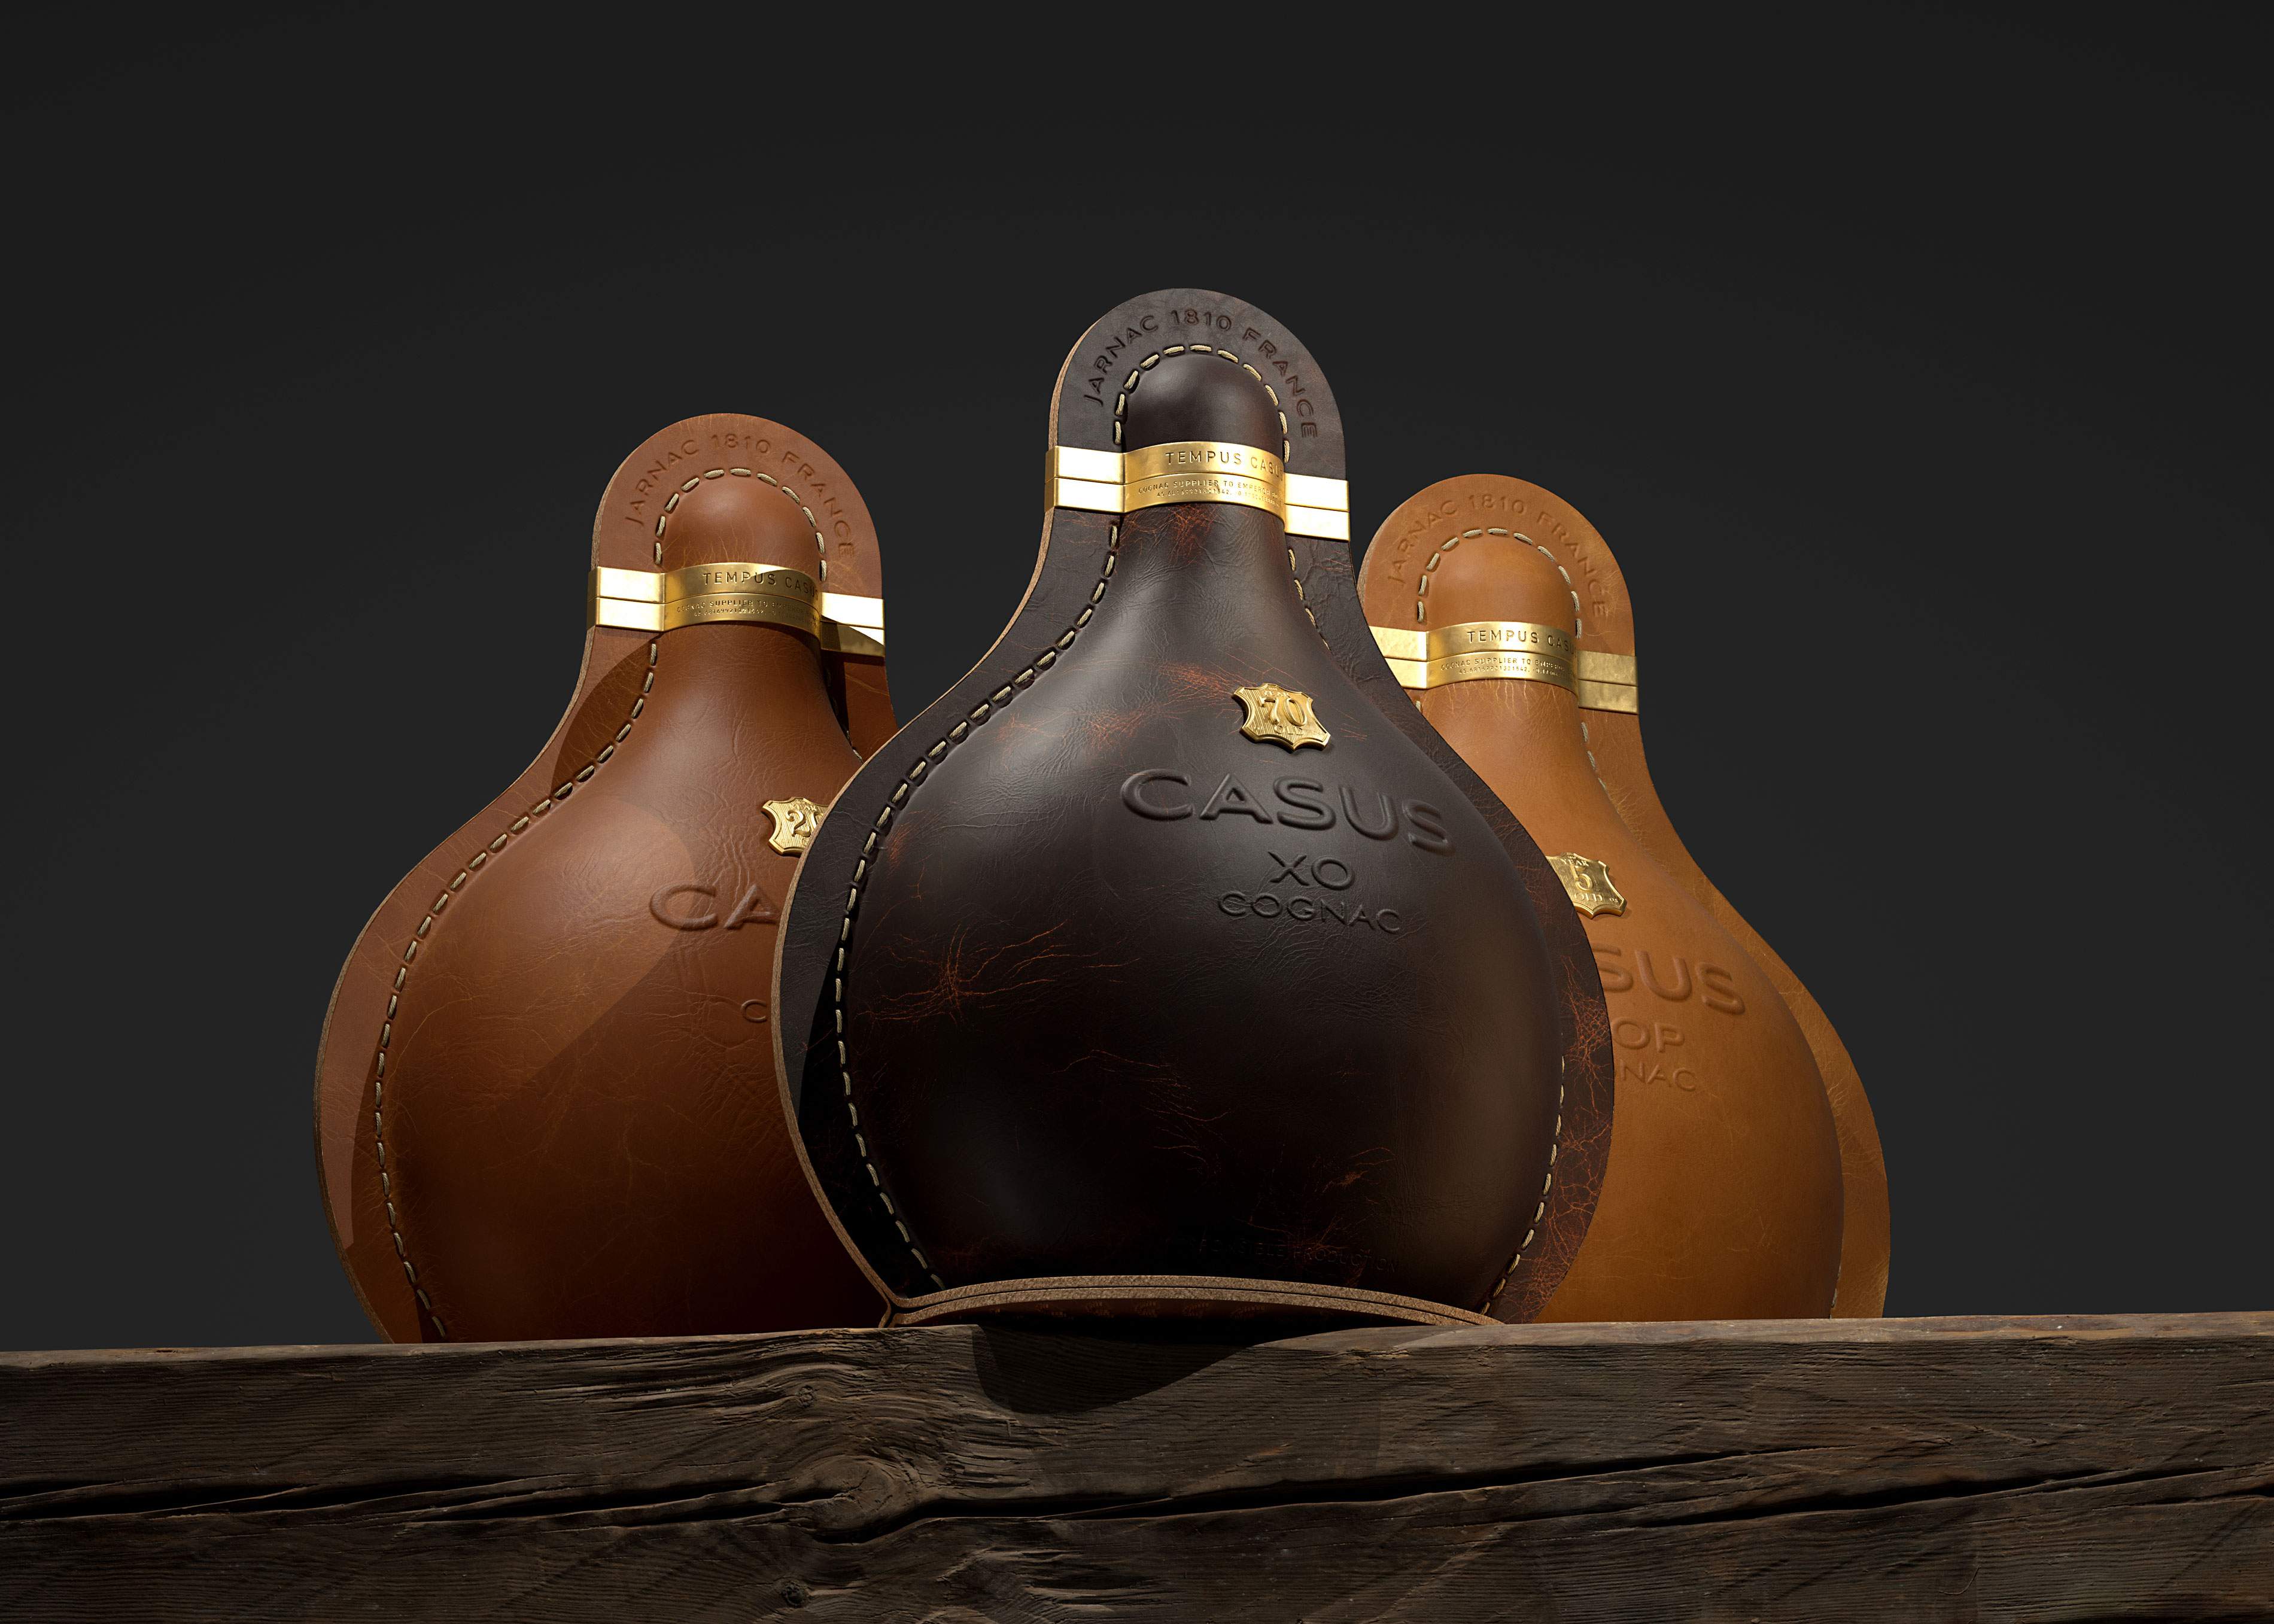 Constantine Bolimond Creates Packaging Design for Cognac Casus